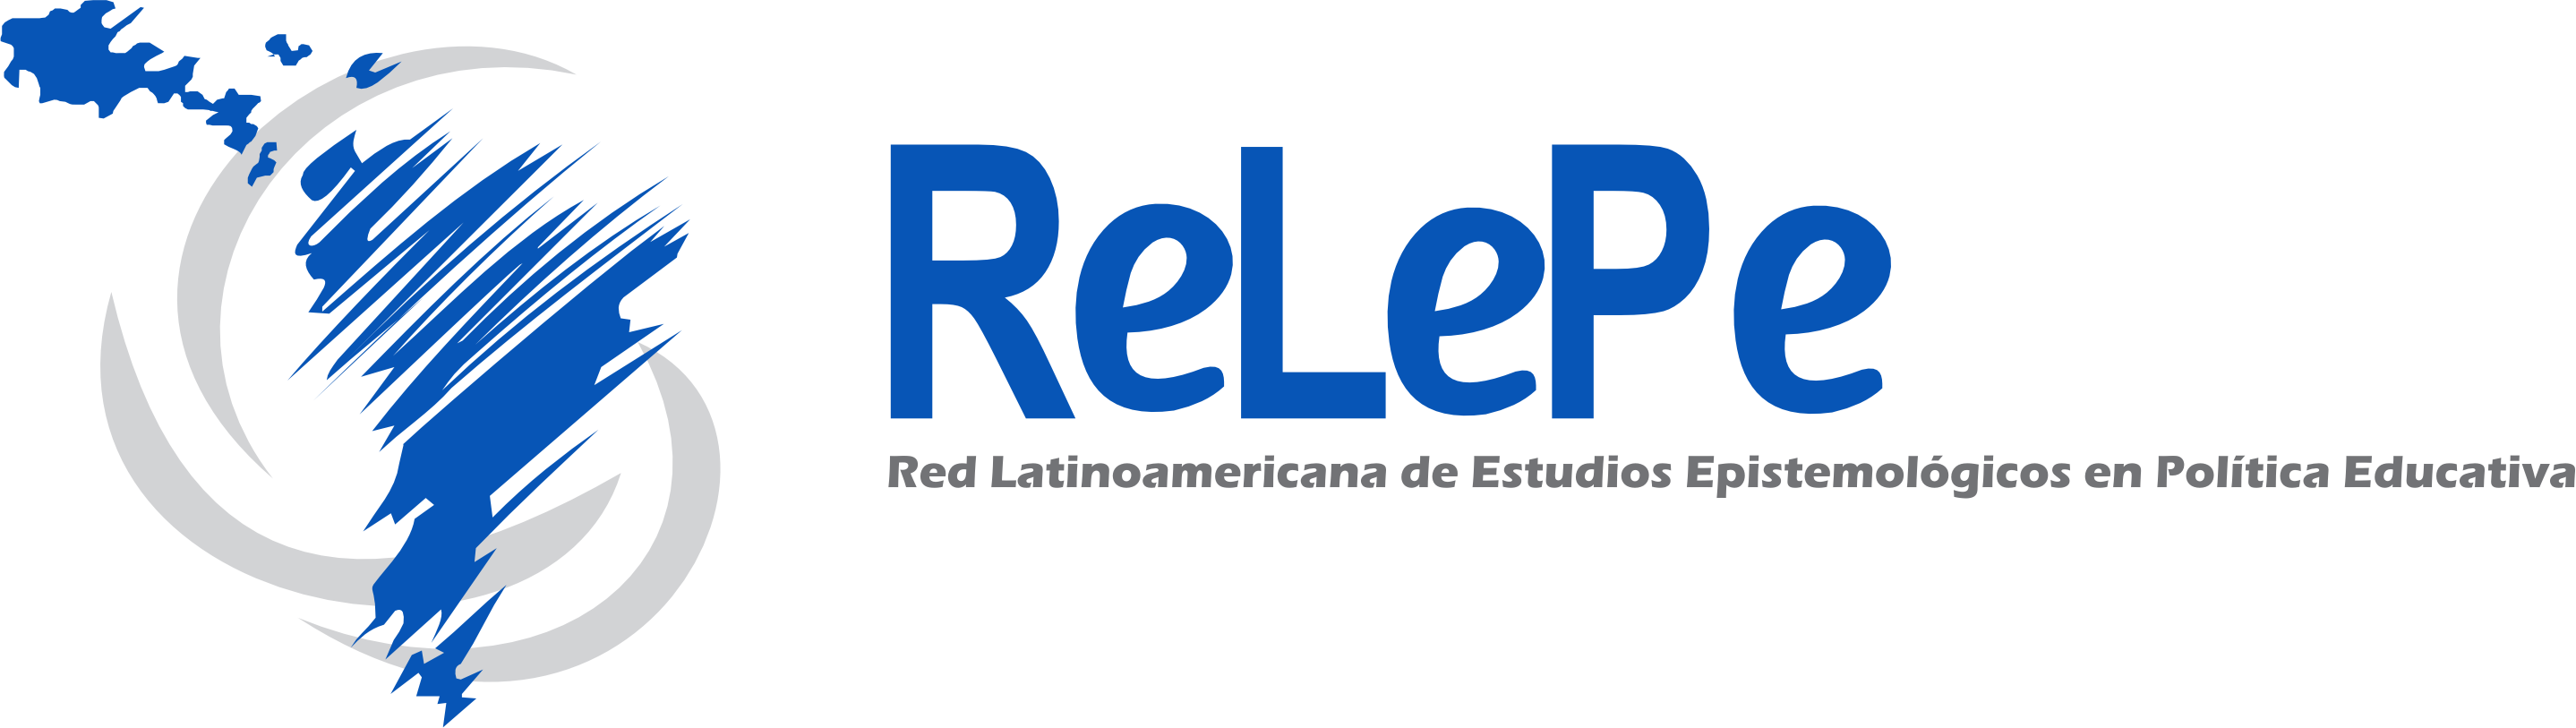 (c) Relepe.org